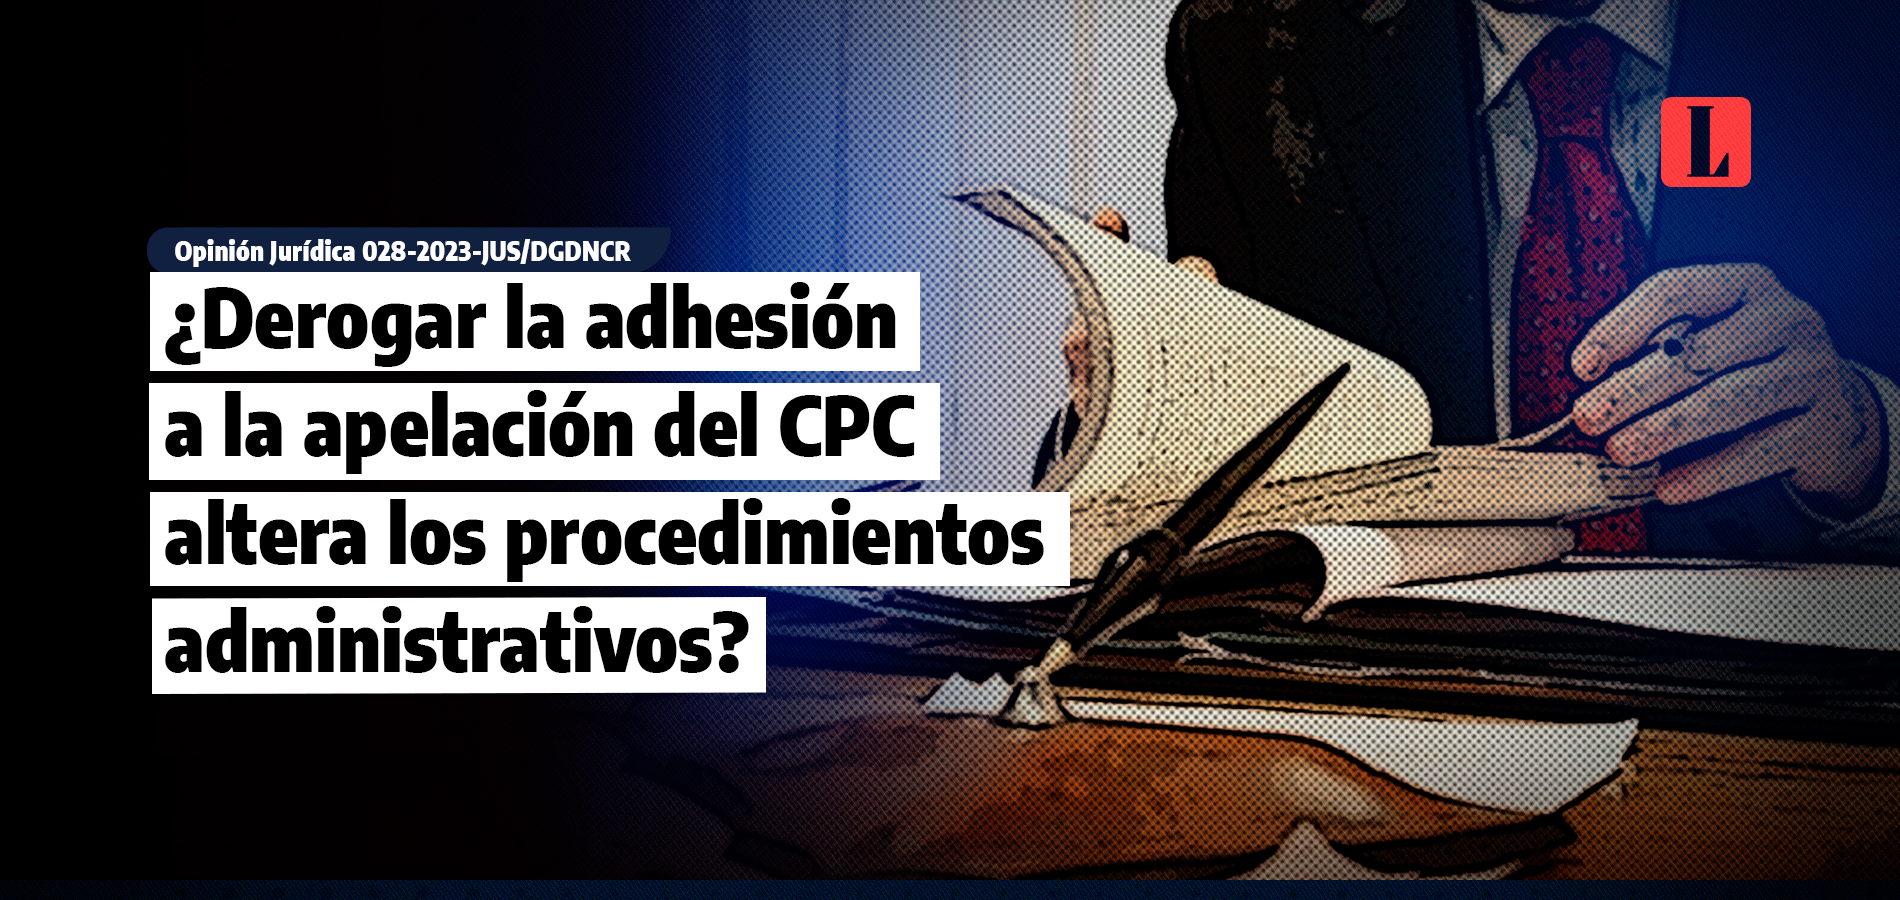 ¿Derogar la adhesión a la apelación del CPC altera los procedimientos administrativos?